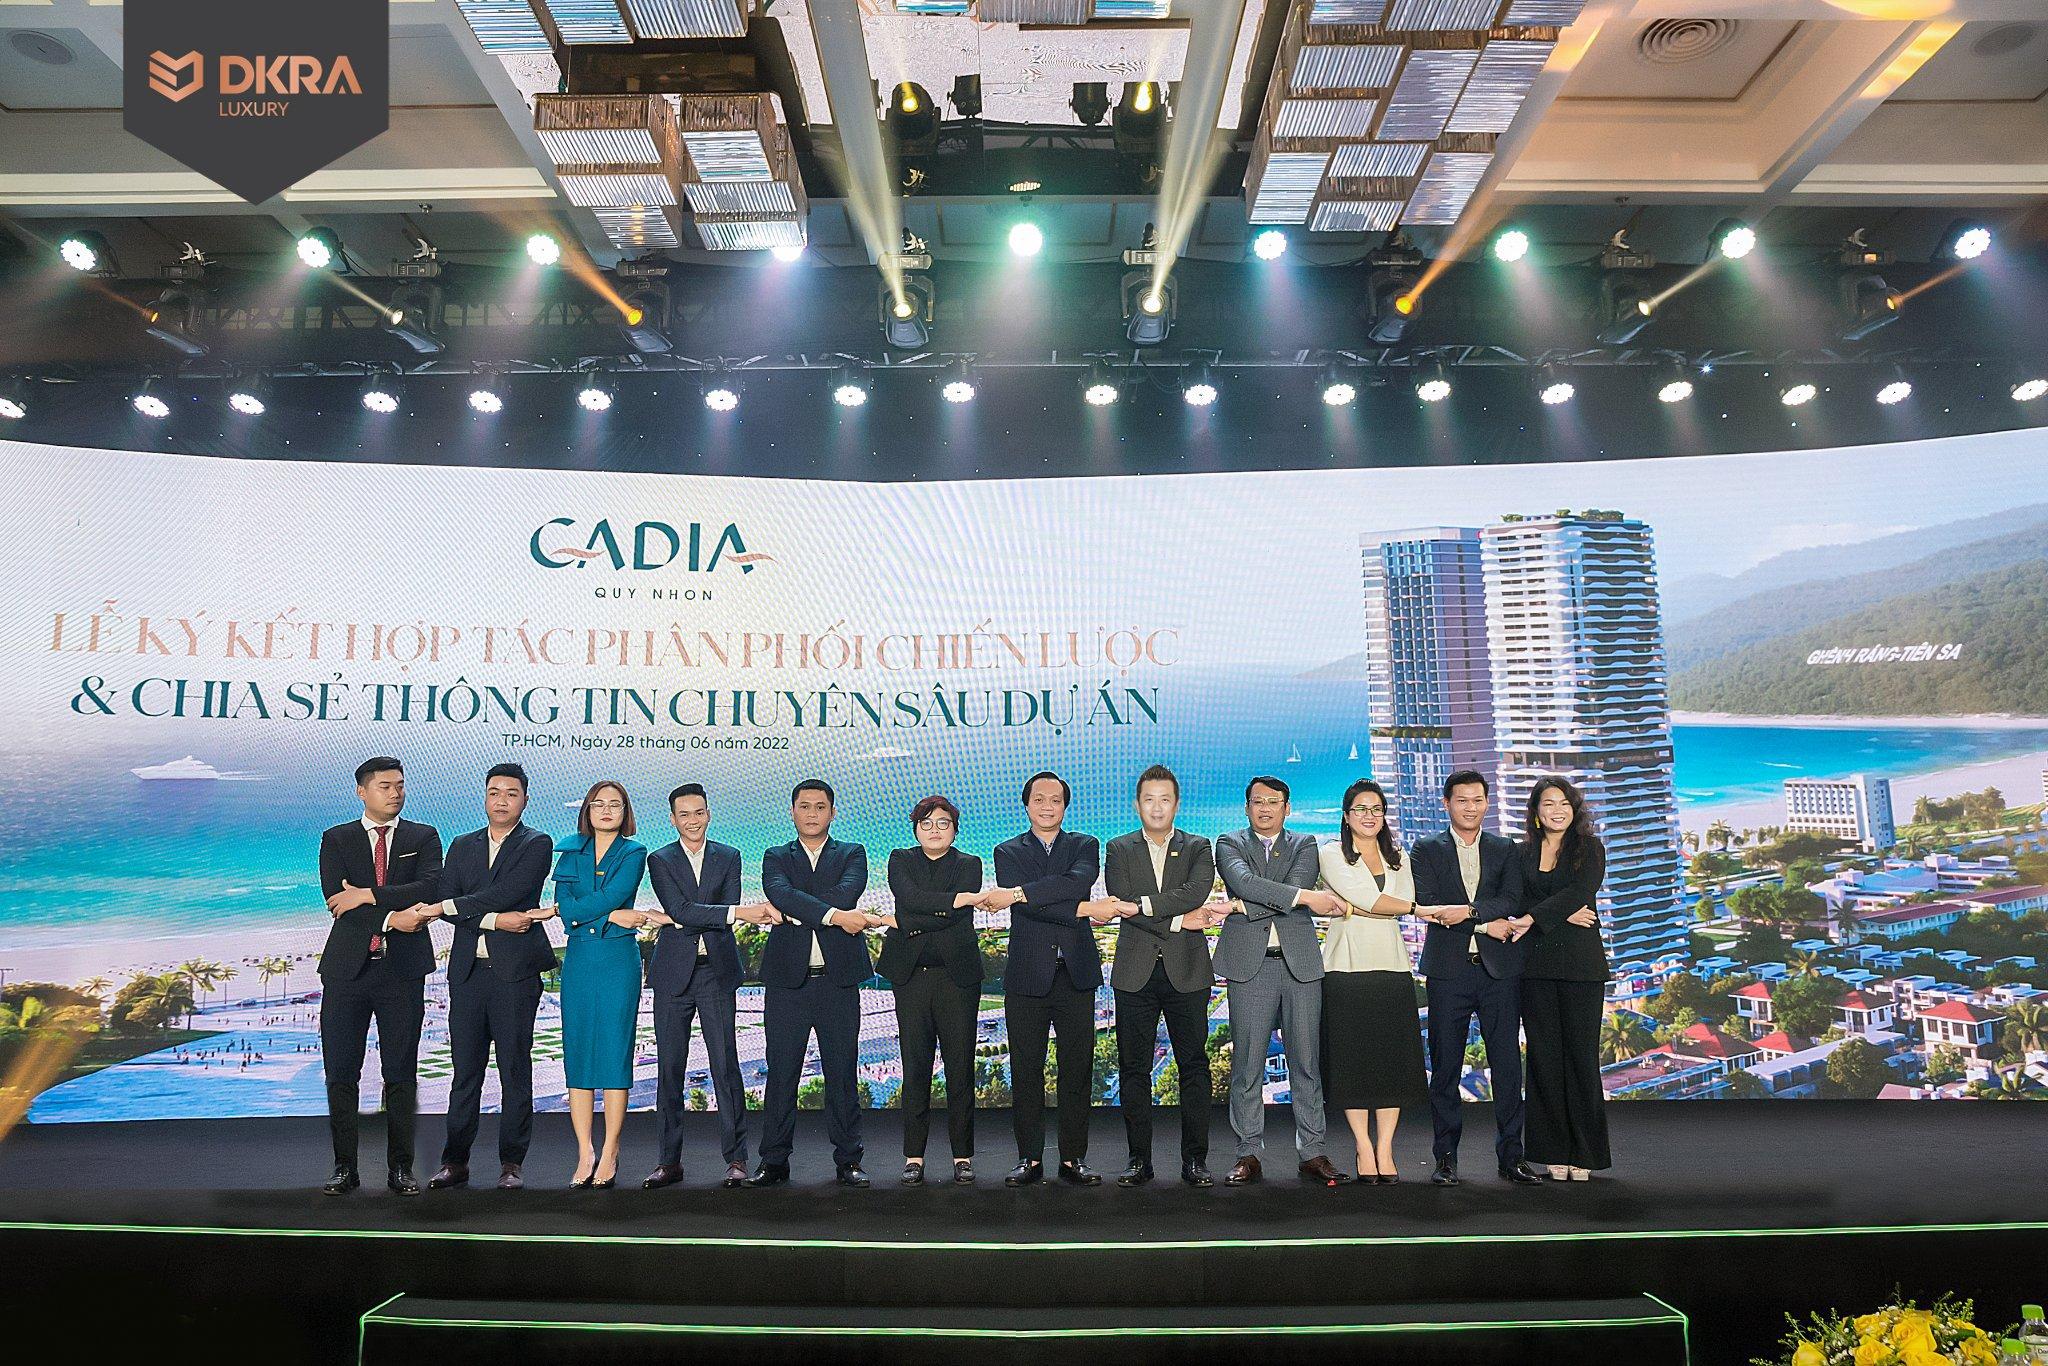 Cadia Quy Nhon chính thức “chào sân”, thị trường bất động sản Quy Nhơn dậy sóng